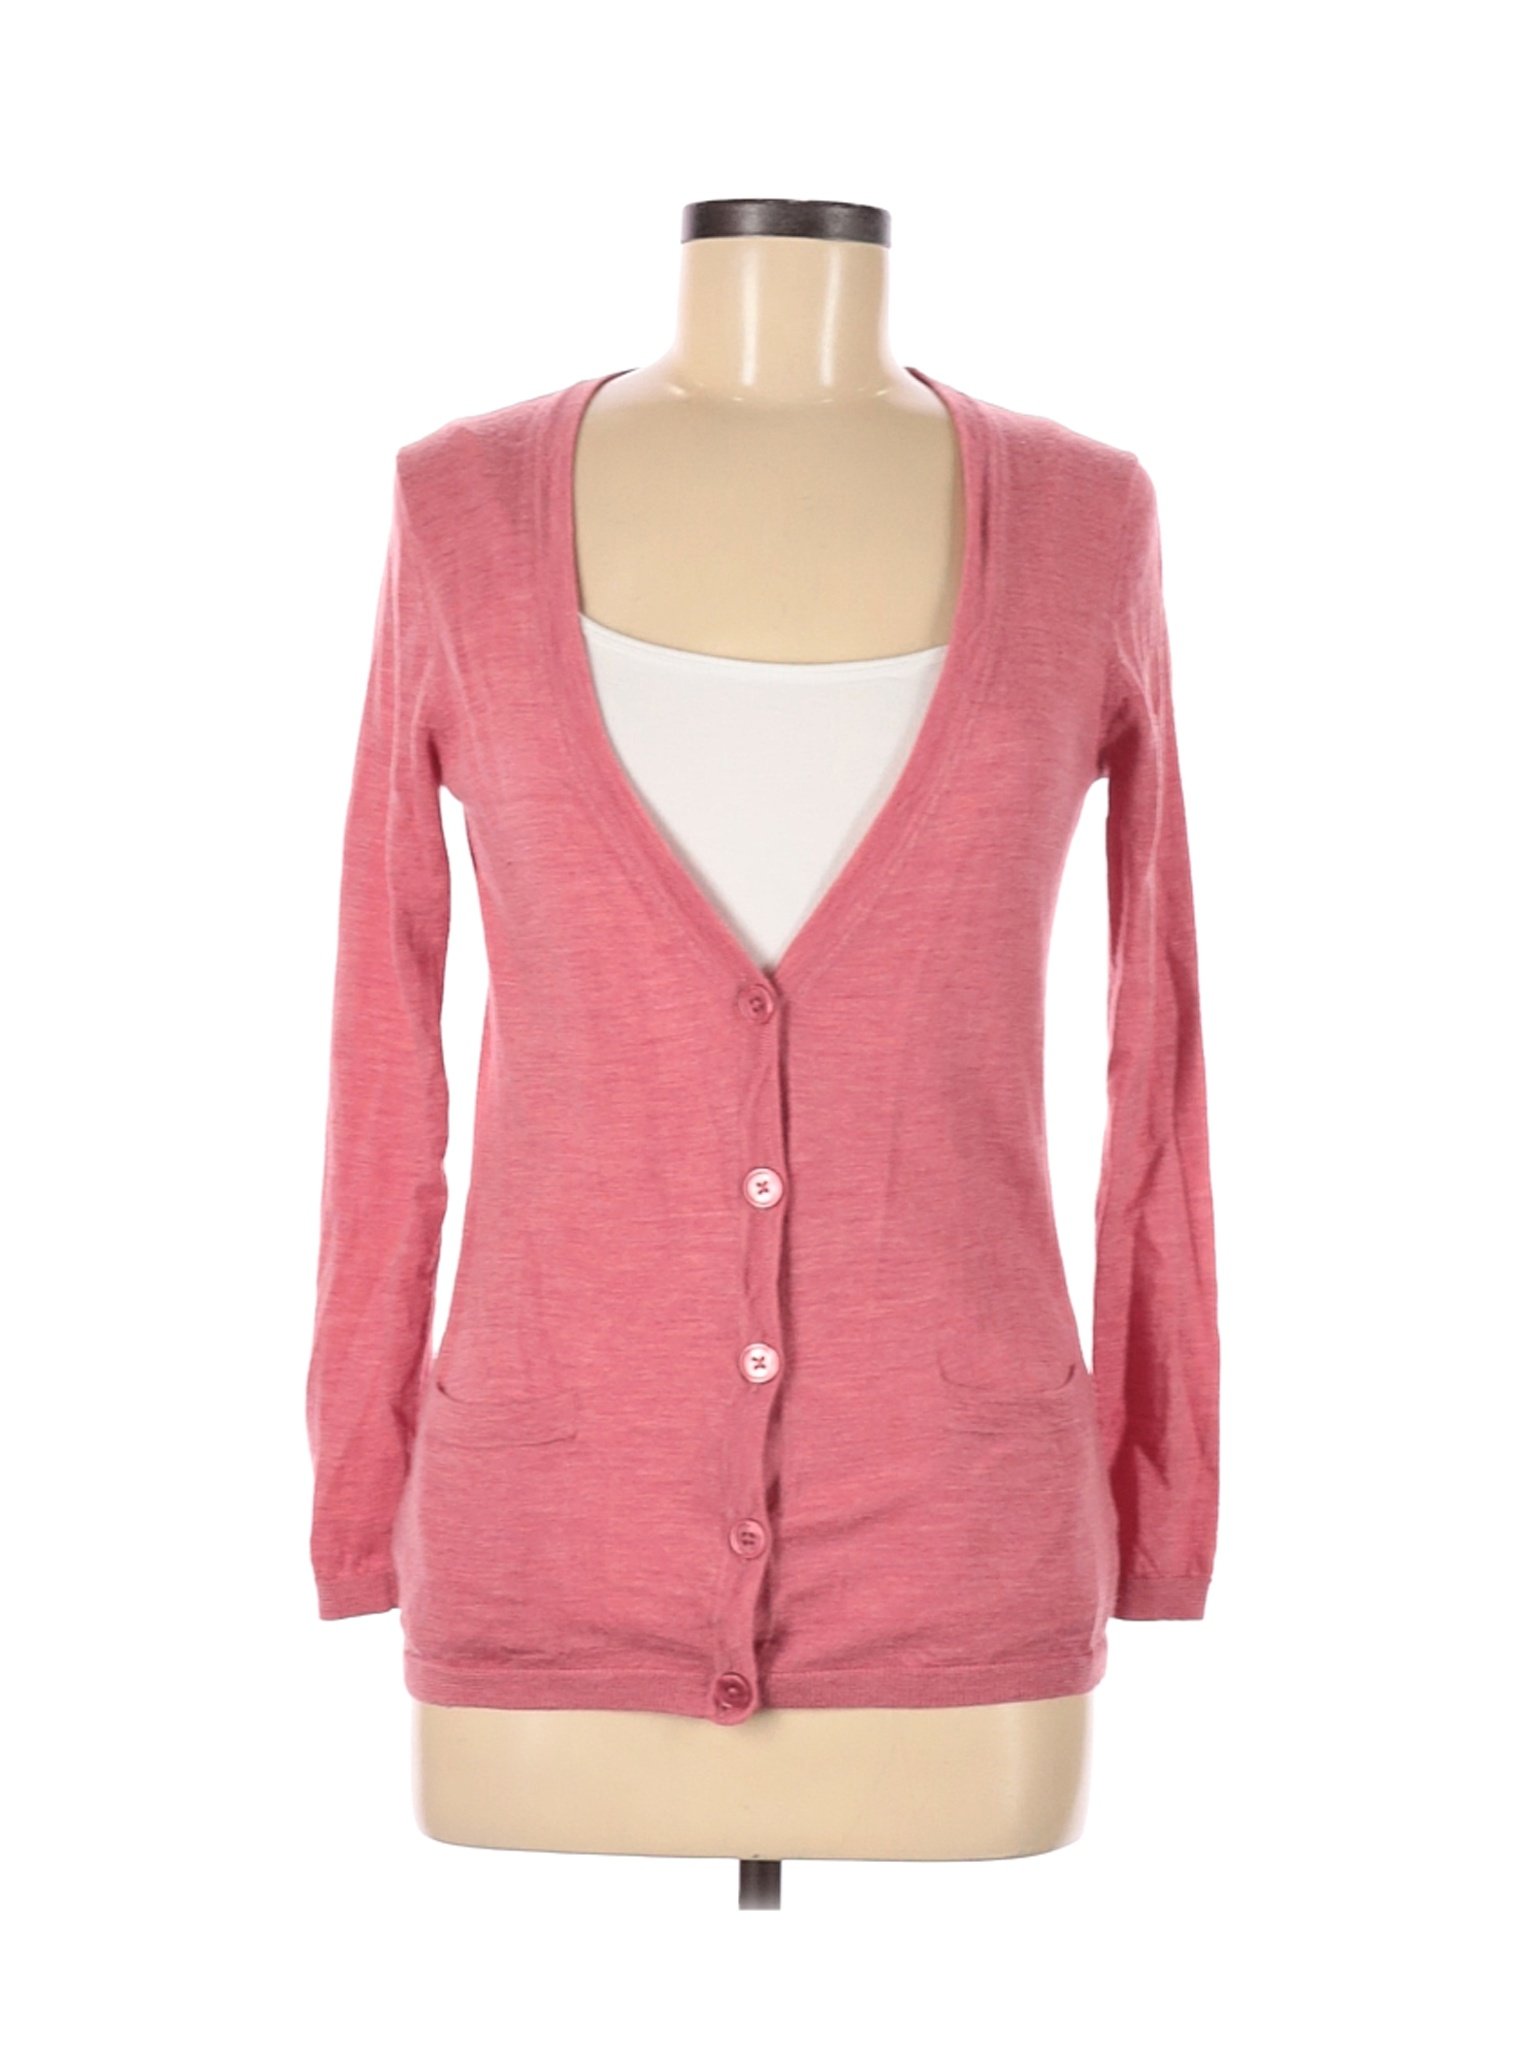 Talbots Women Pink Wool Cardigan S Petites | eBay